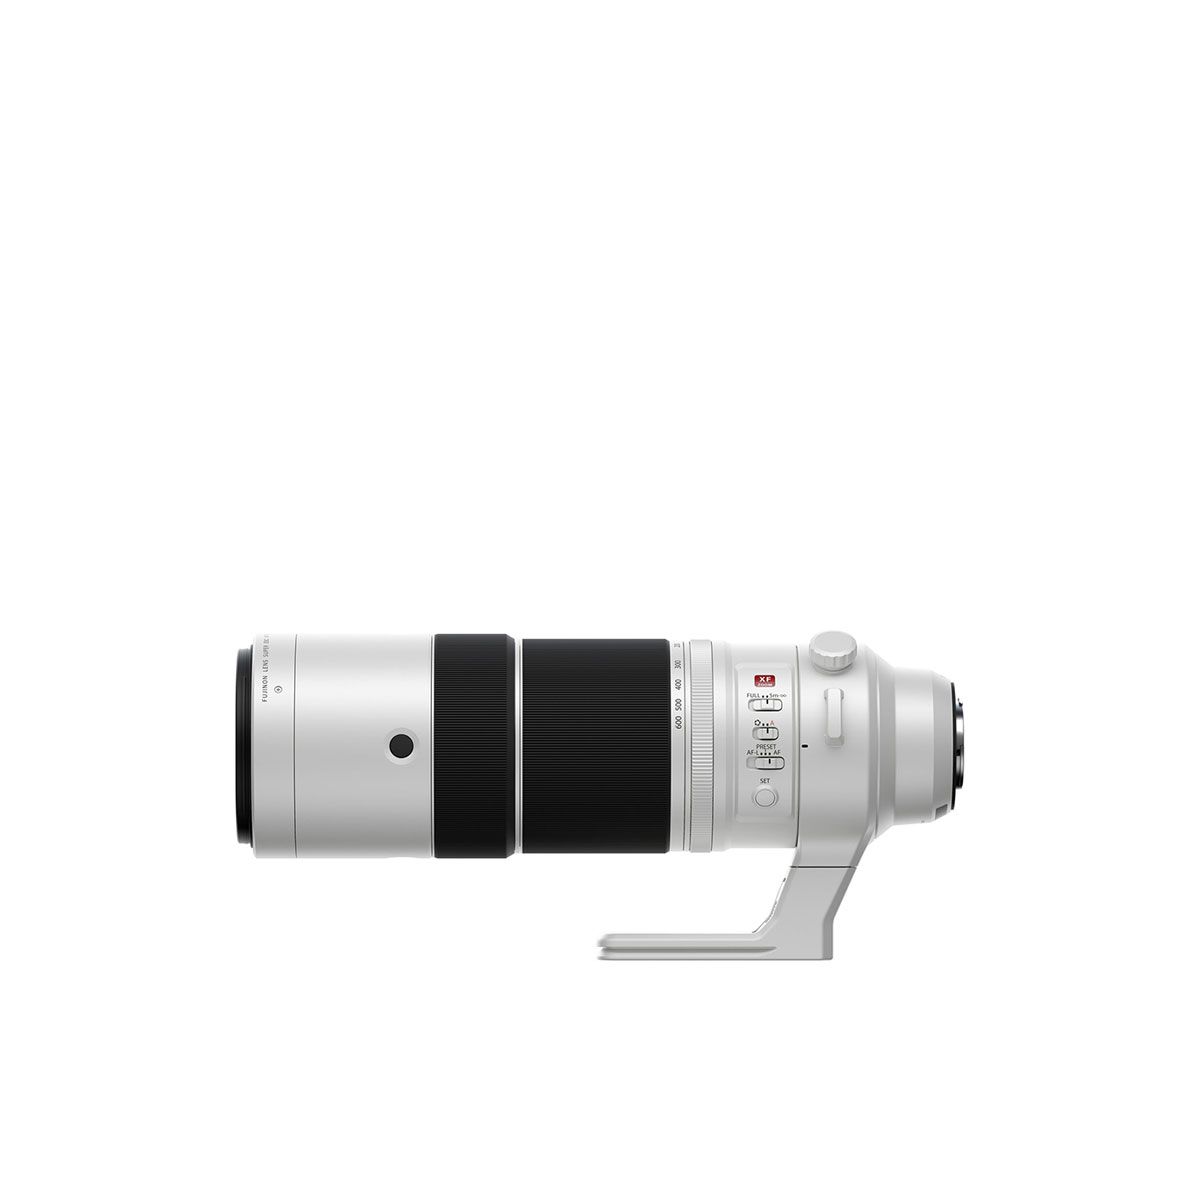  Ống kính Fujifilm XF 150-600mm F5.6-8R OIS WR - Chính hãng 